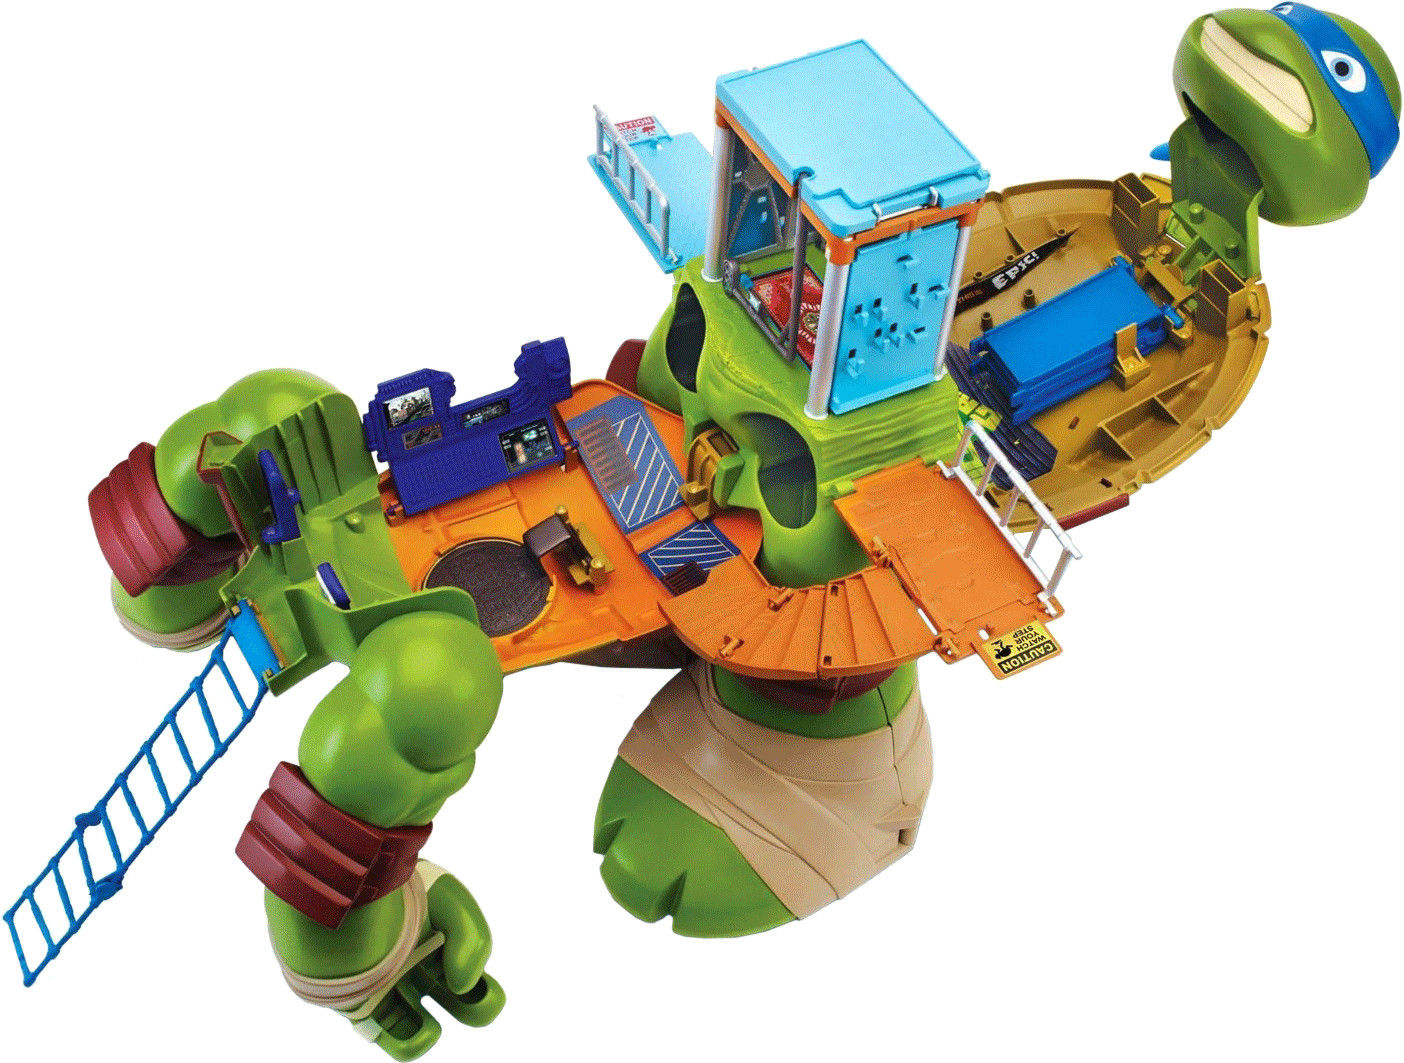 Flair Teenage Mutant Ninja Turtles Mutation Giant Leonardo Playset